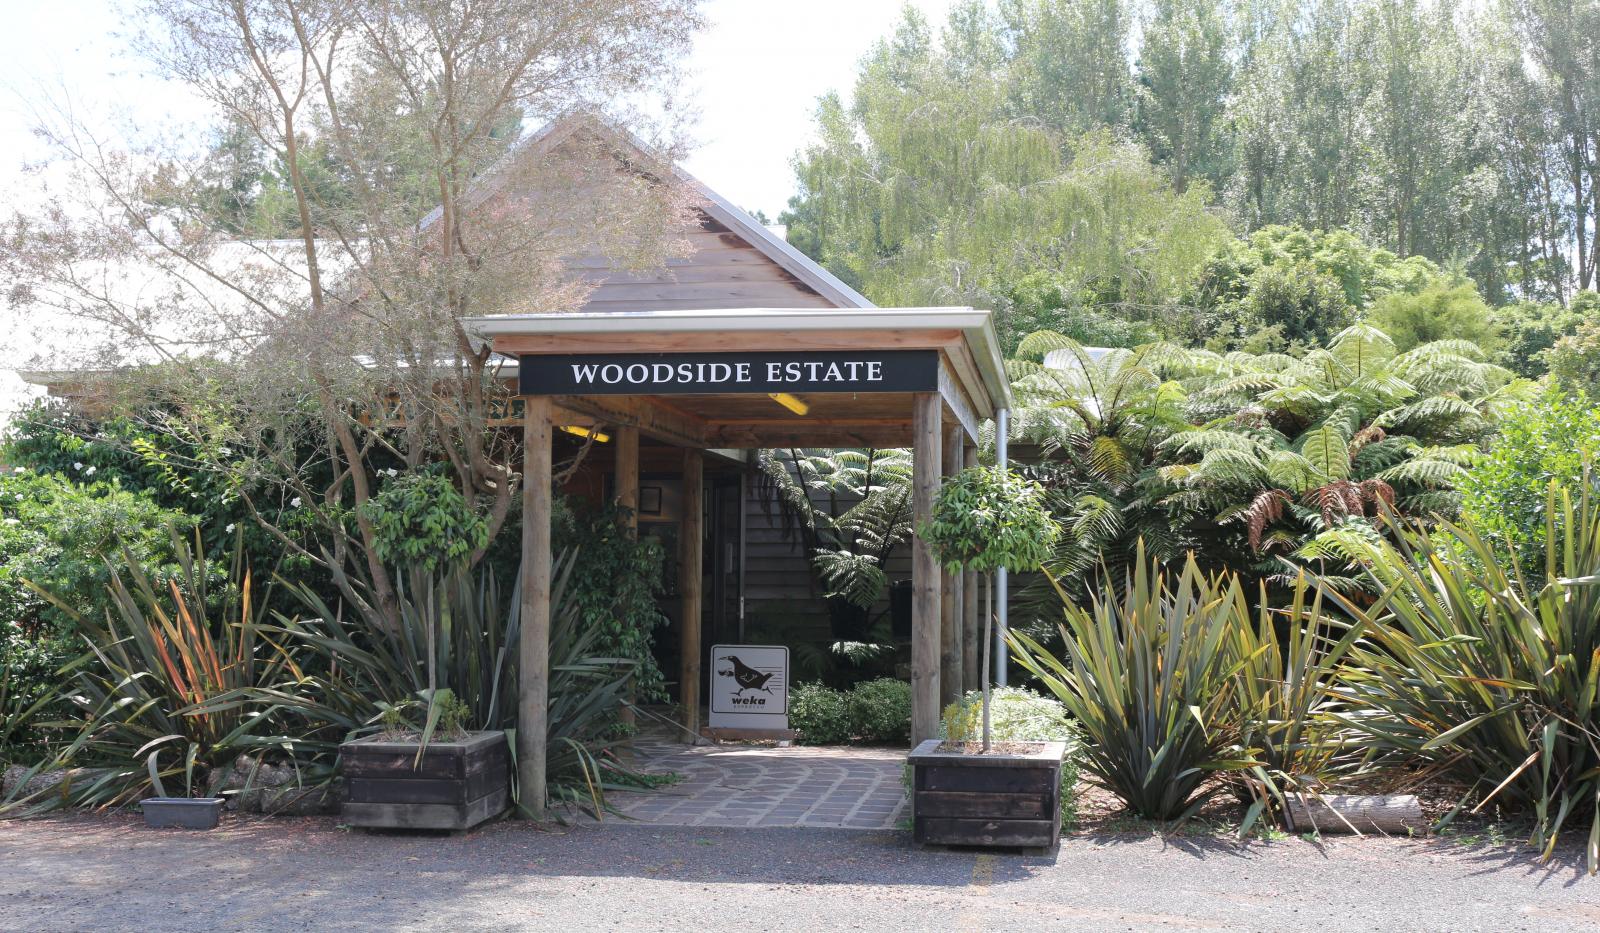 Woodside Estate Cafe & Restaurant